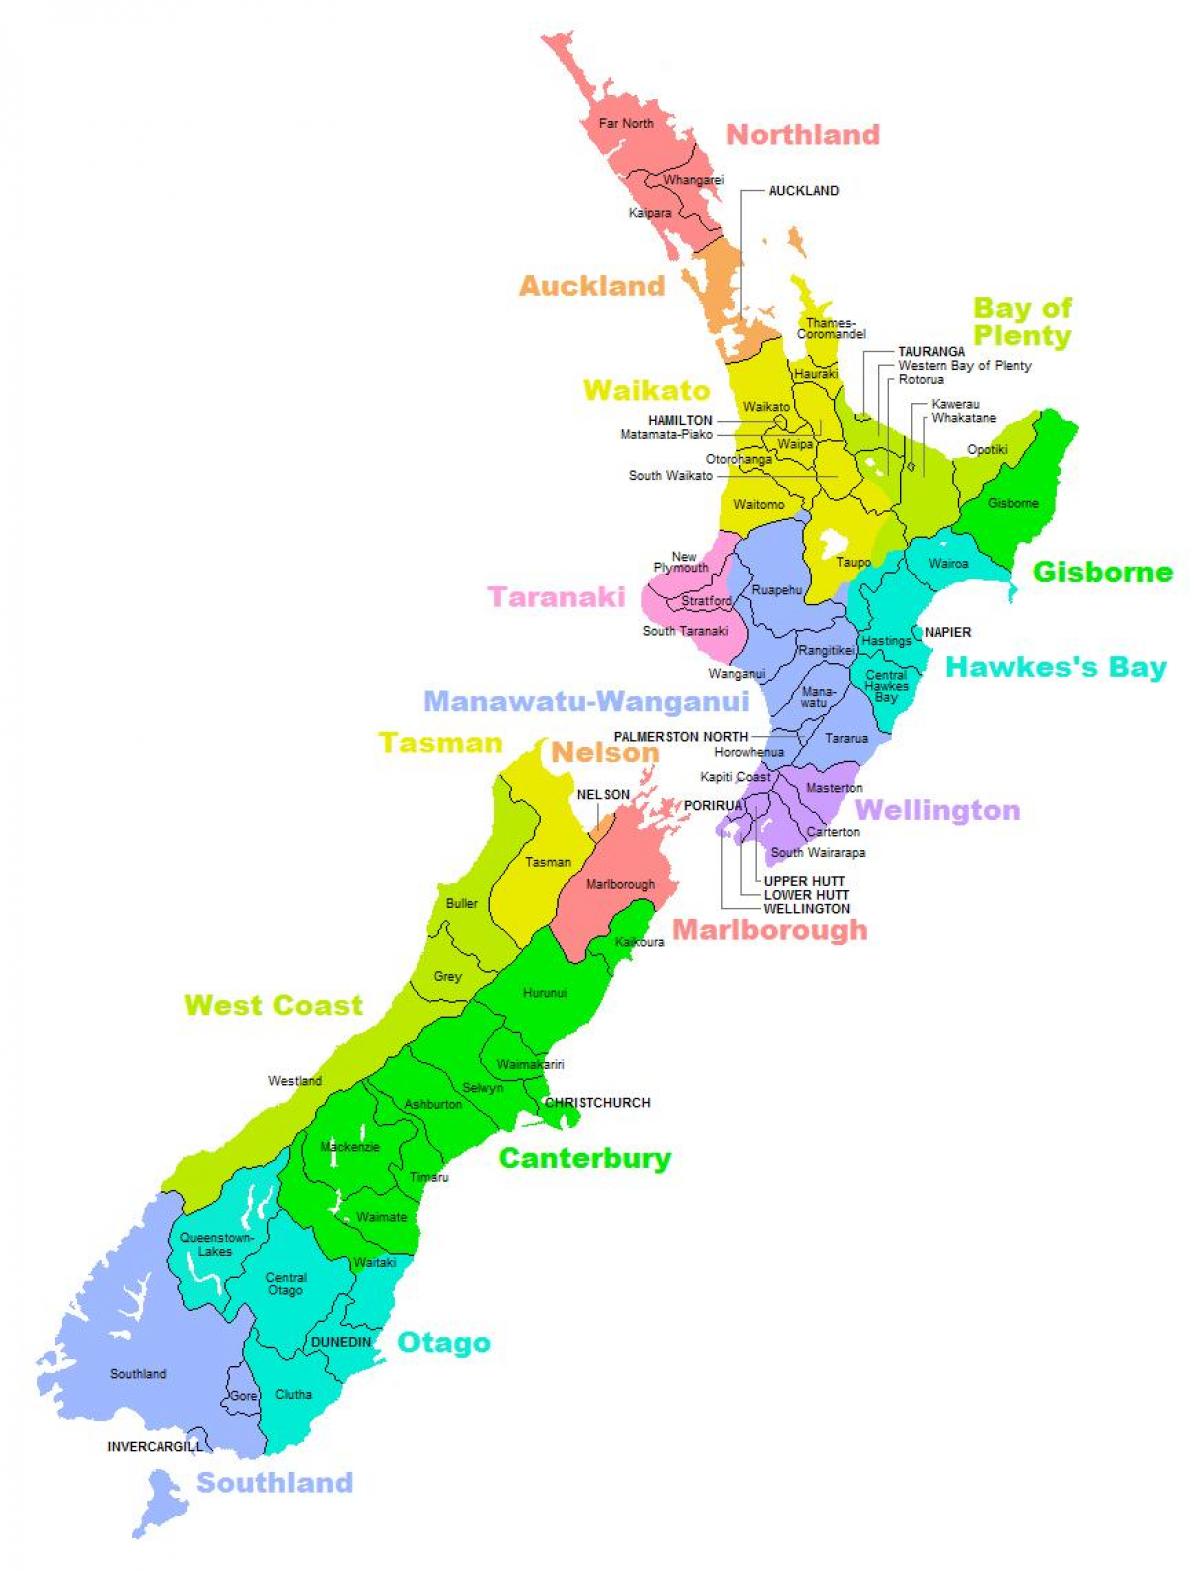 Neuseeland district anzeigen